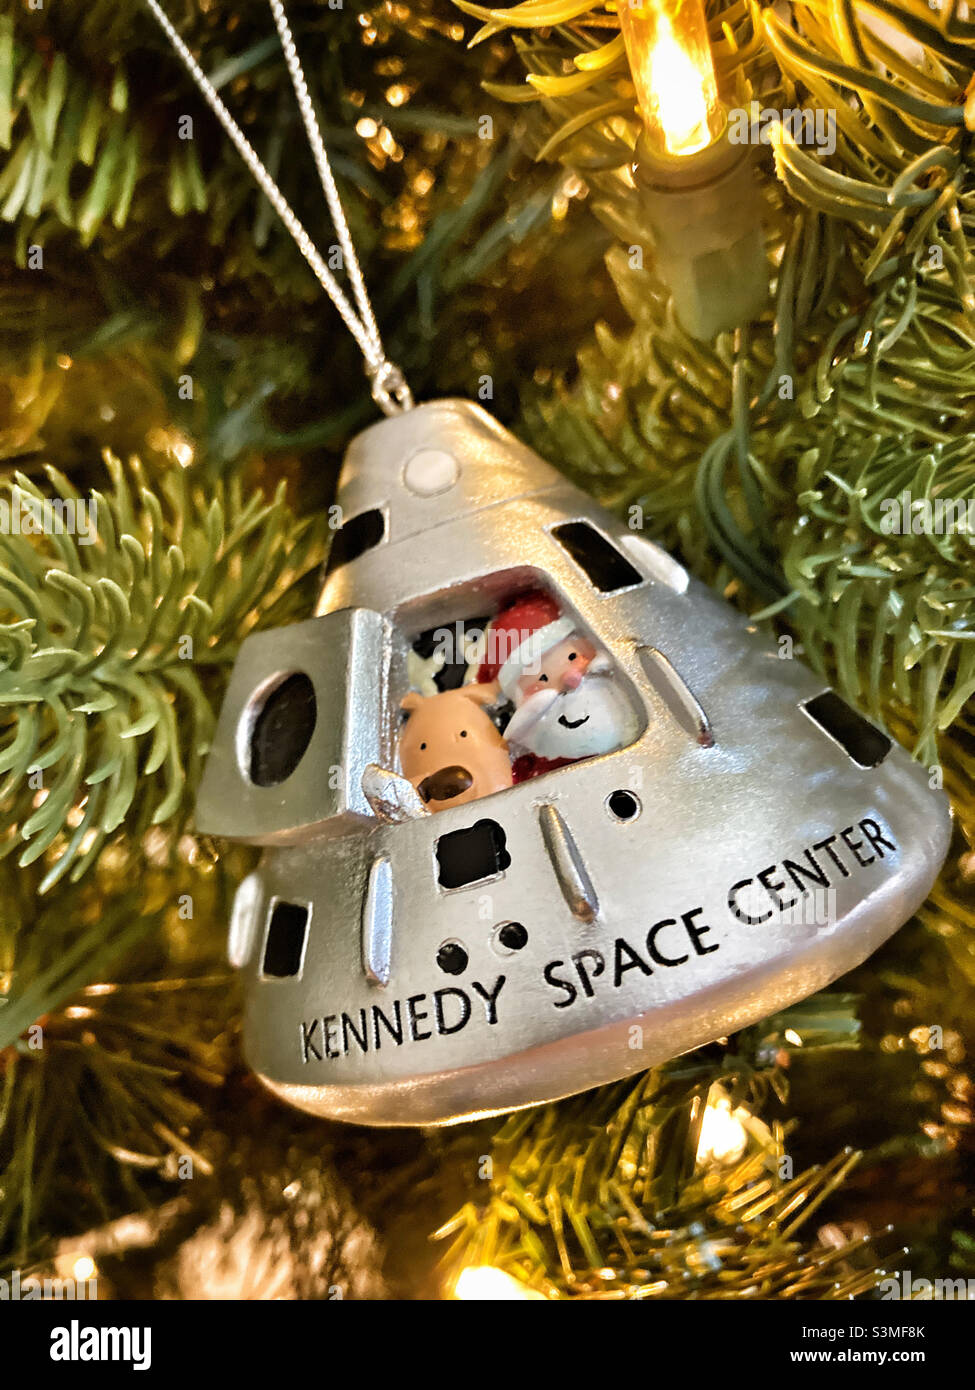 Kennedy Space Center – Weihnachtsbaumschmuck Stockfoto